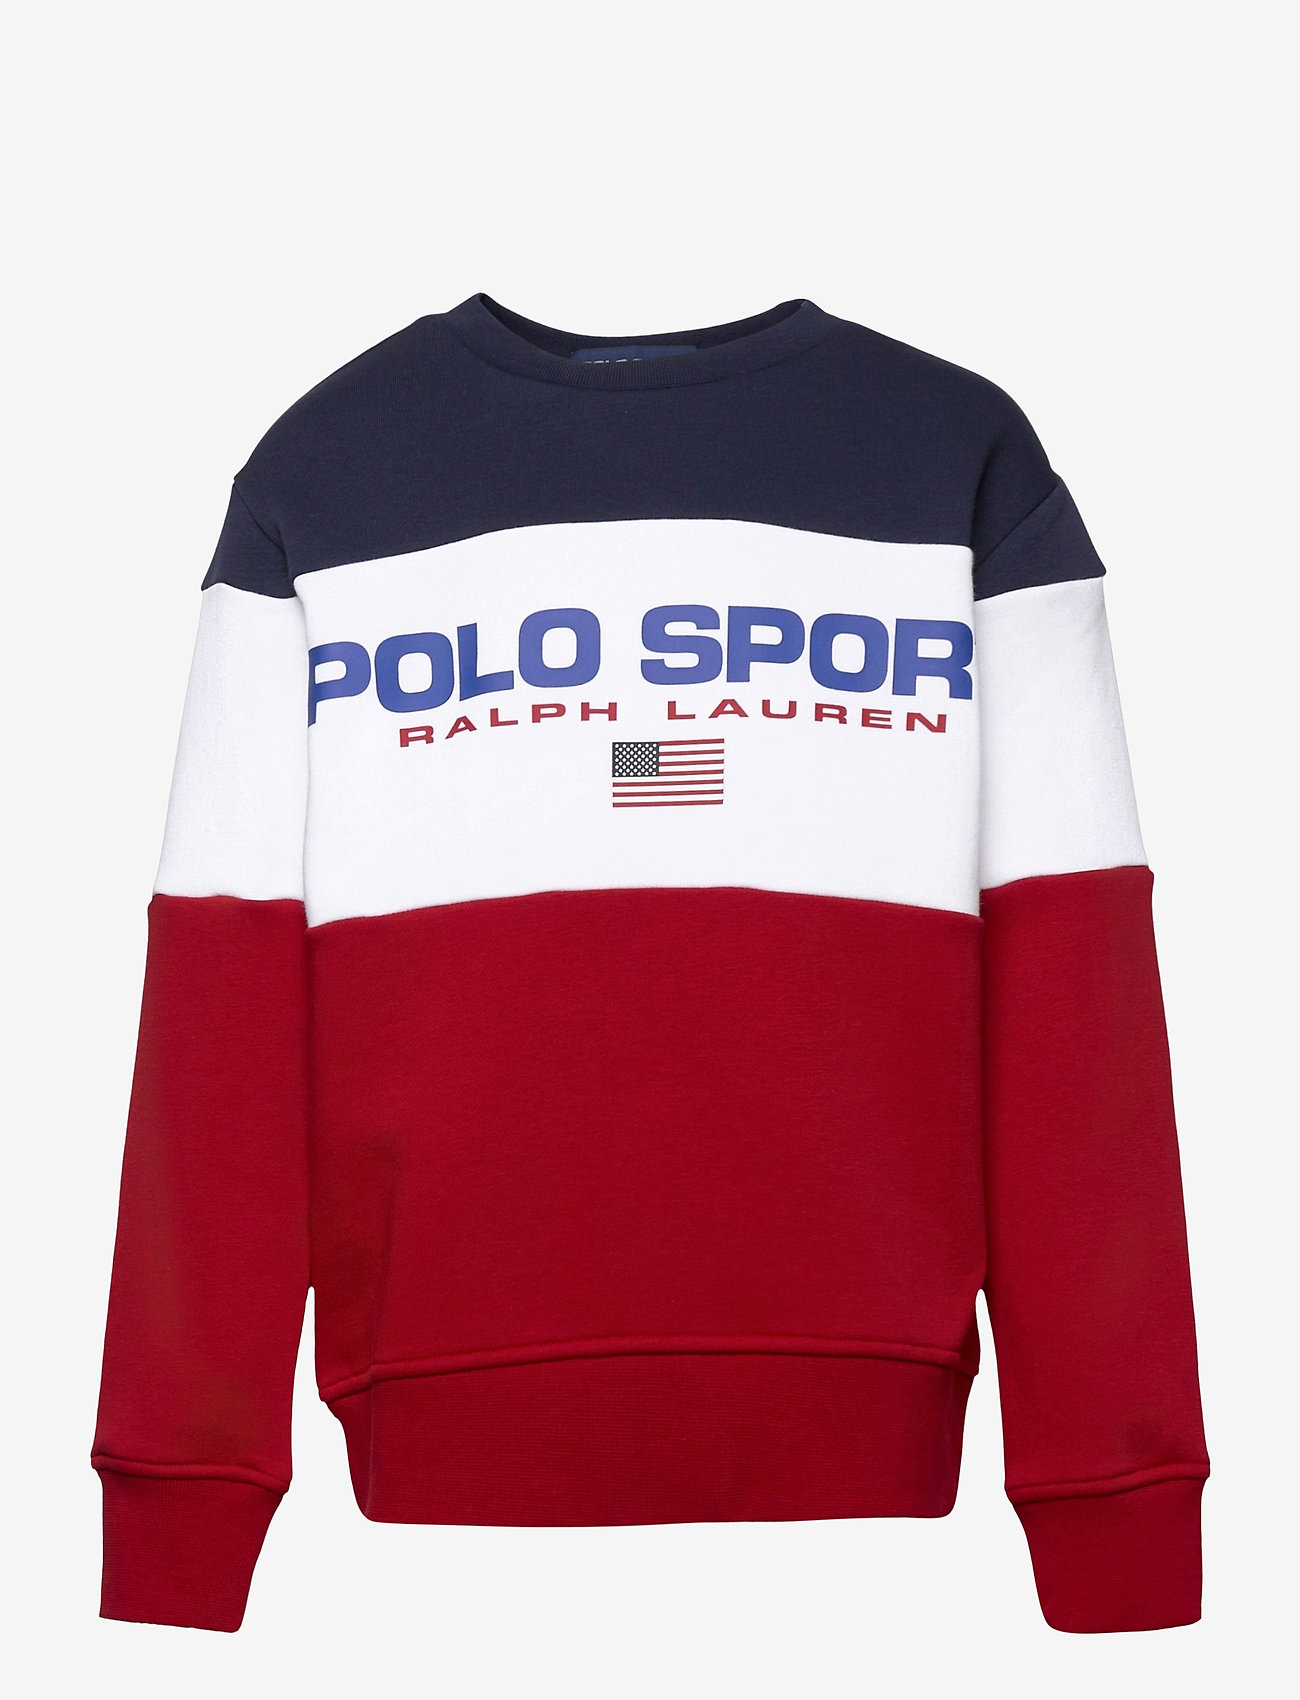 Ralph Lauren Polo Sport Fleece on Sale, 56% OFF | www ...